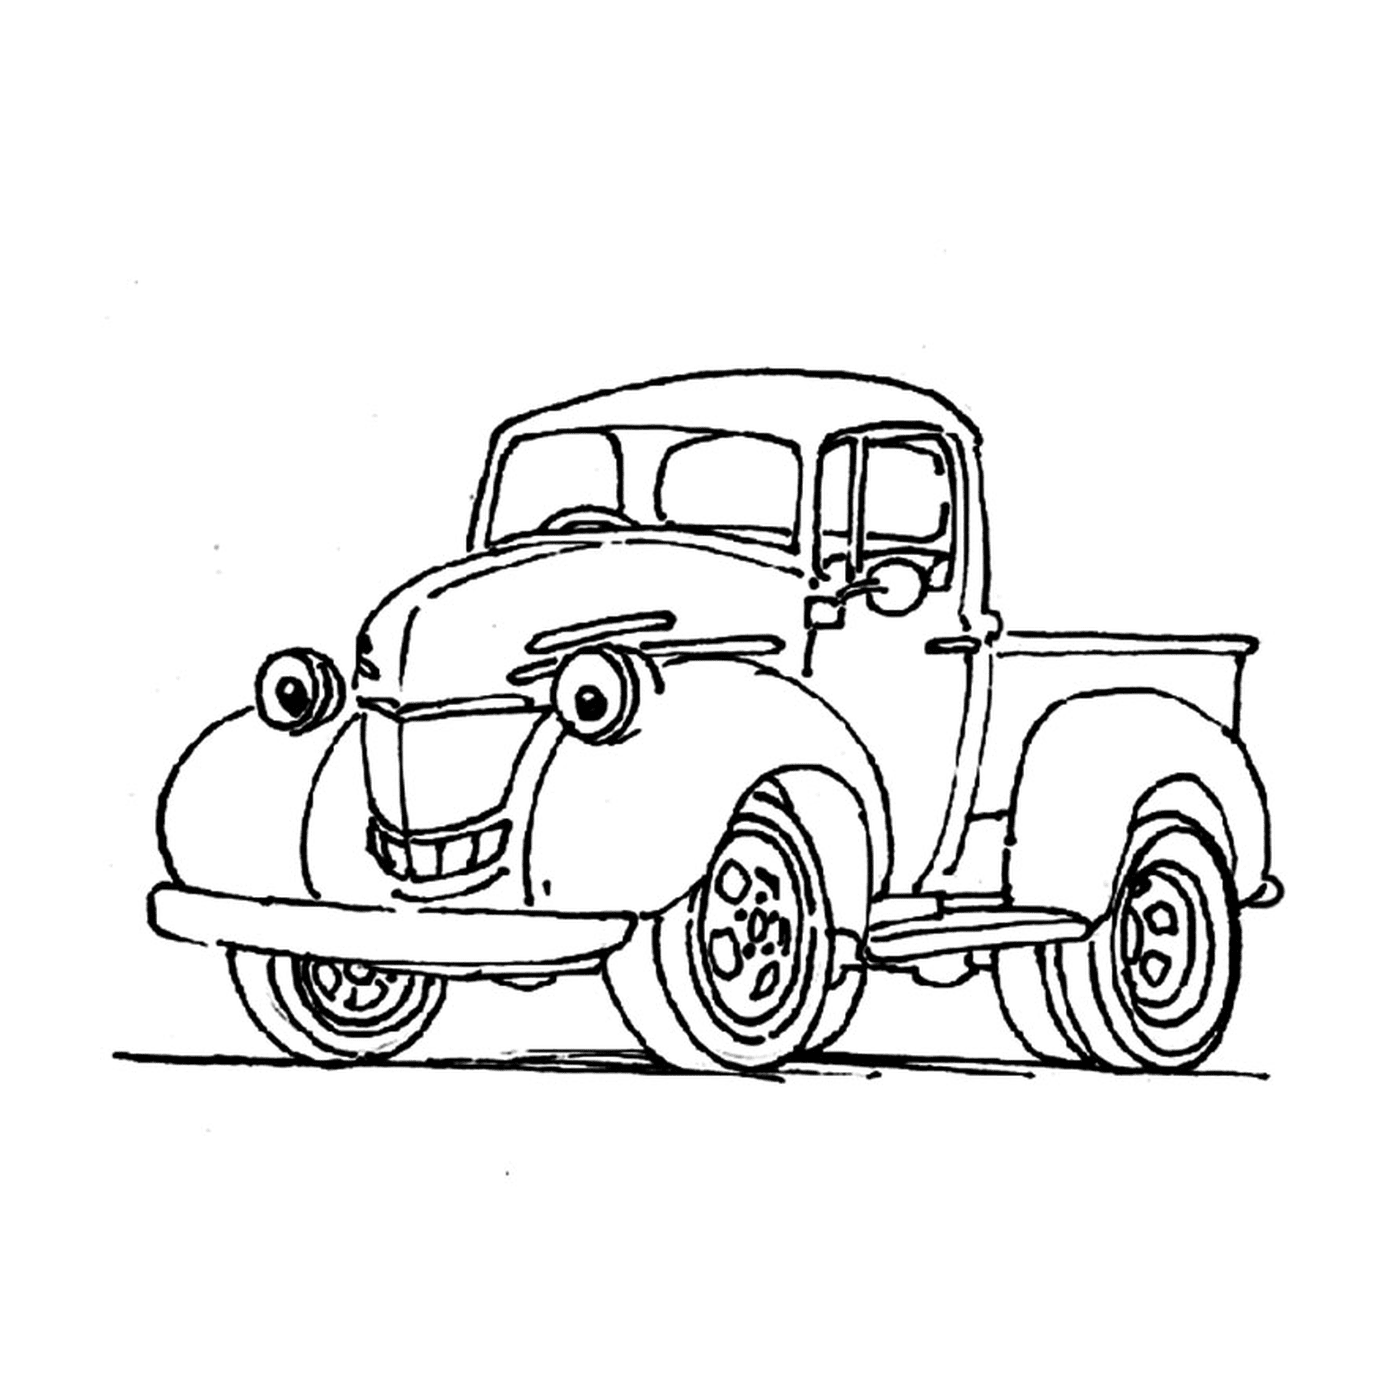  Старый грузовик с улыбающимся лицом, нарисованным на боку 